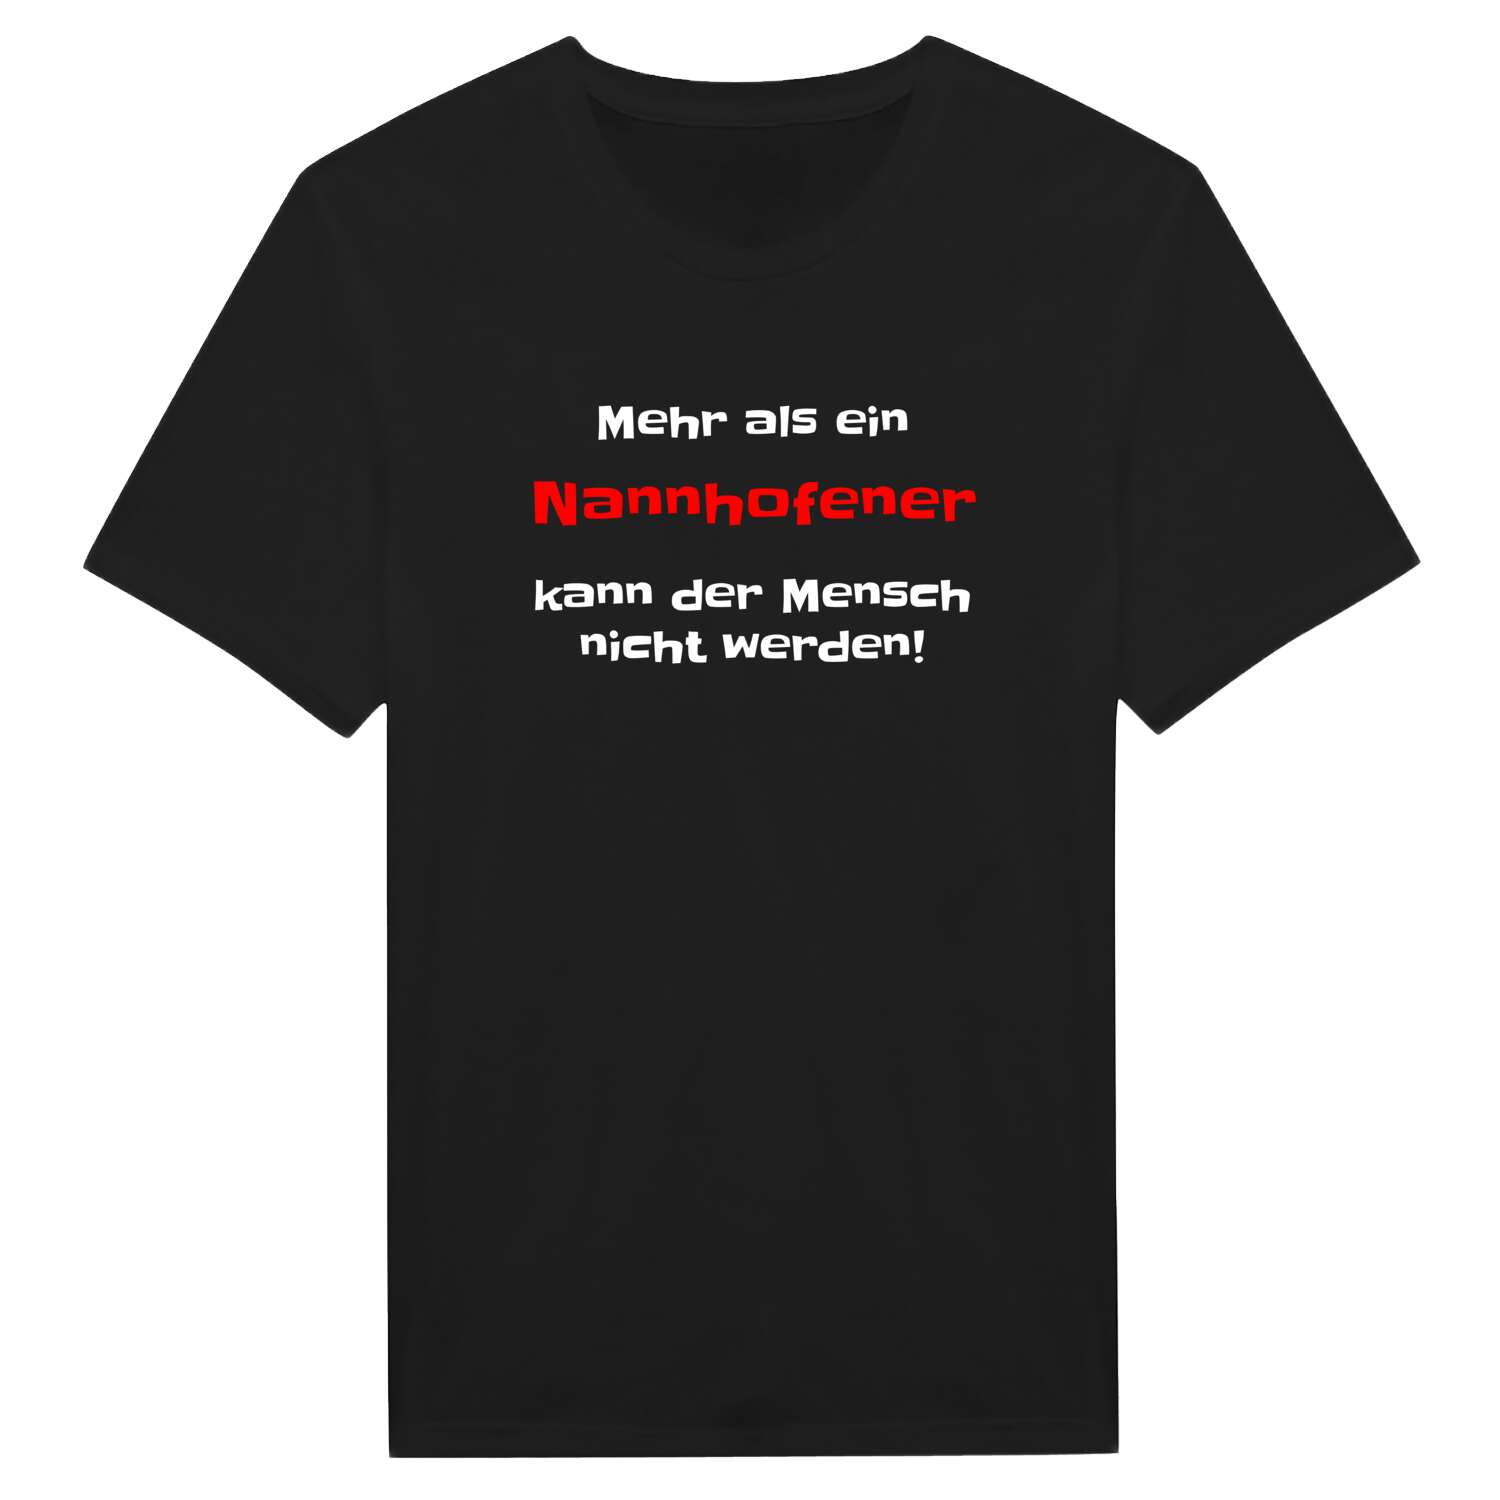 Nannhofen T-Shirt »Mehr als ein«